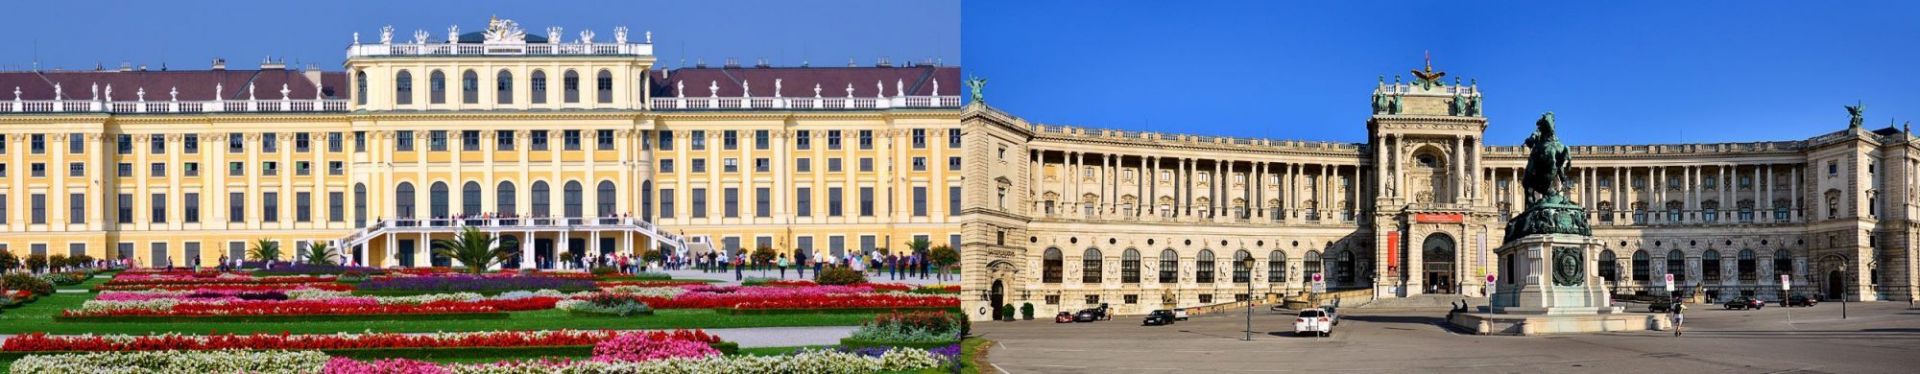 Vienna Hofburg and Schönbrunn Castle